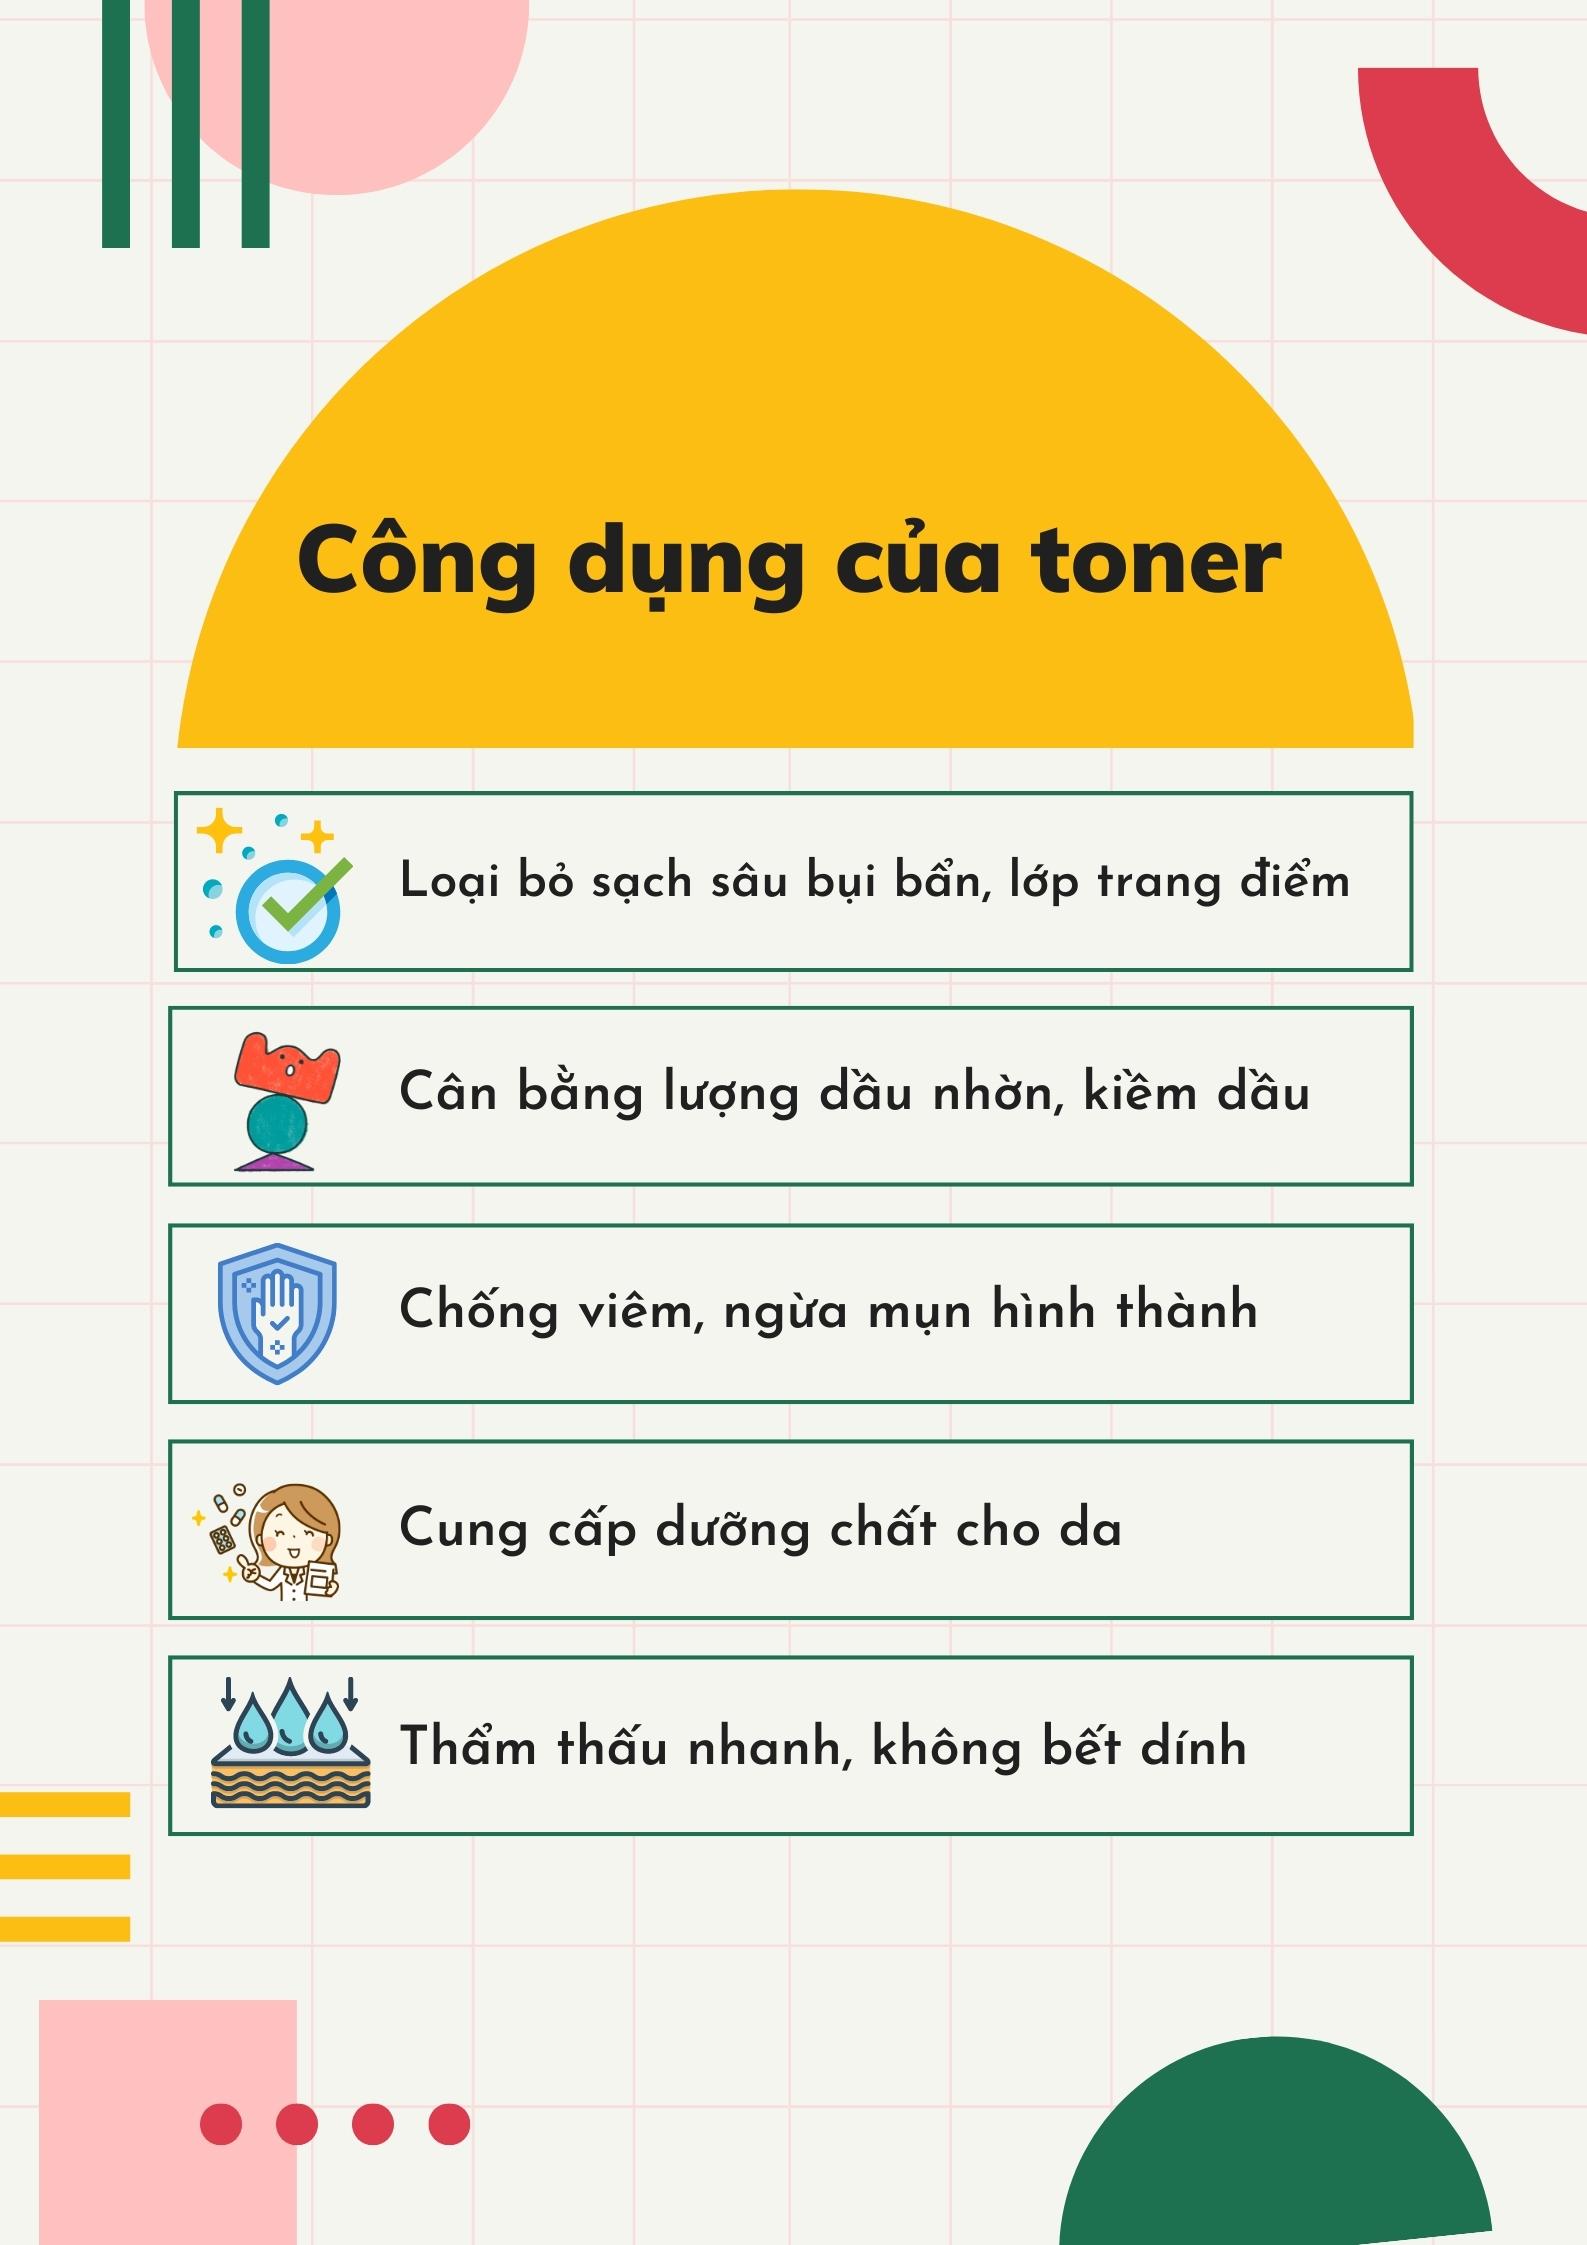 cong-dung-toner-info.jpg